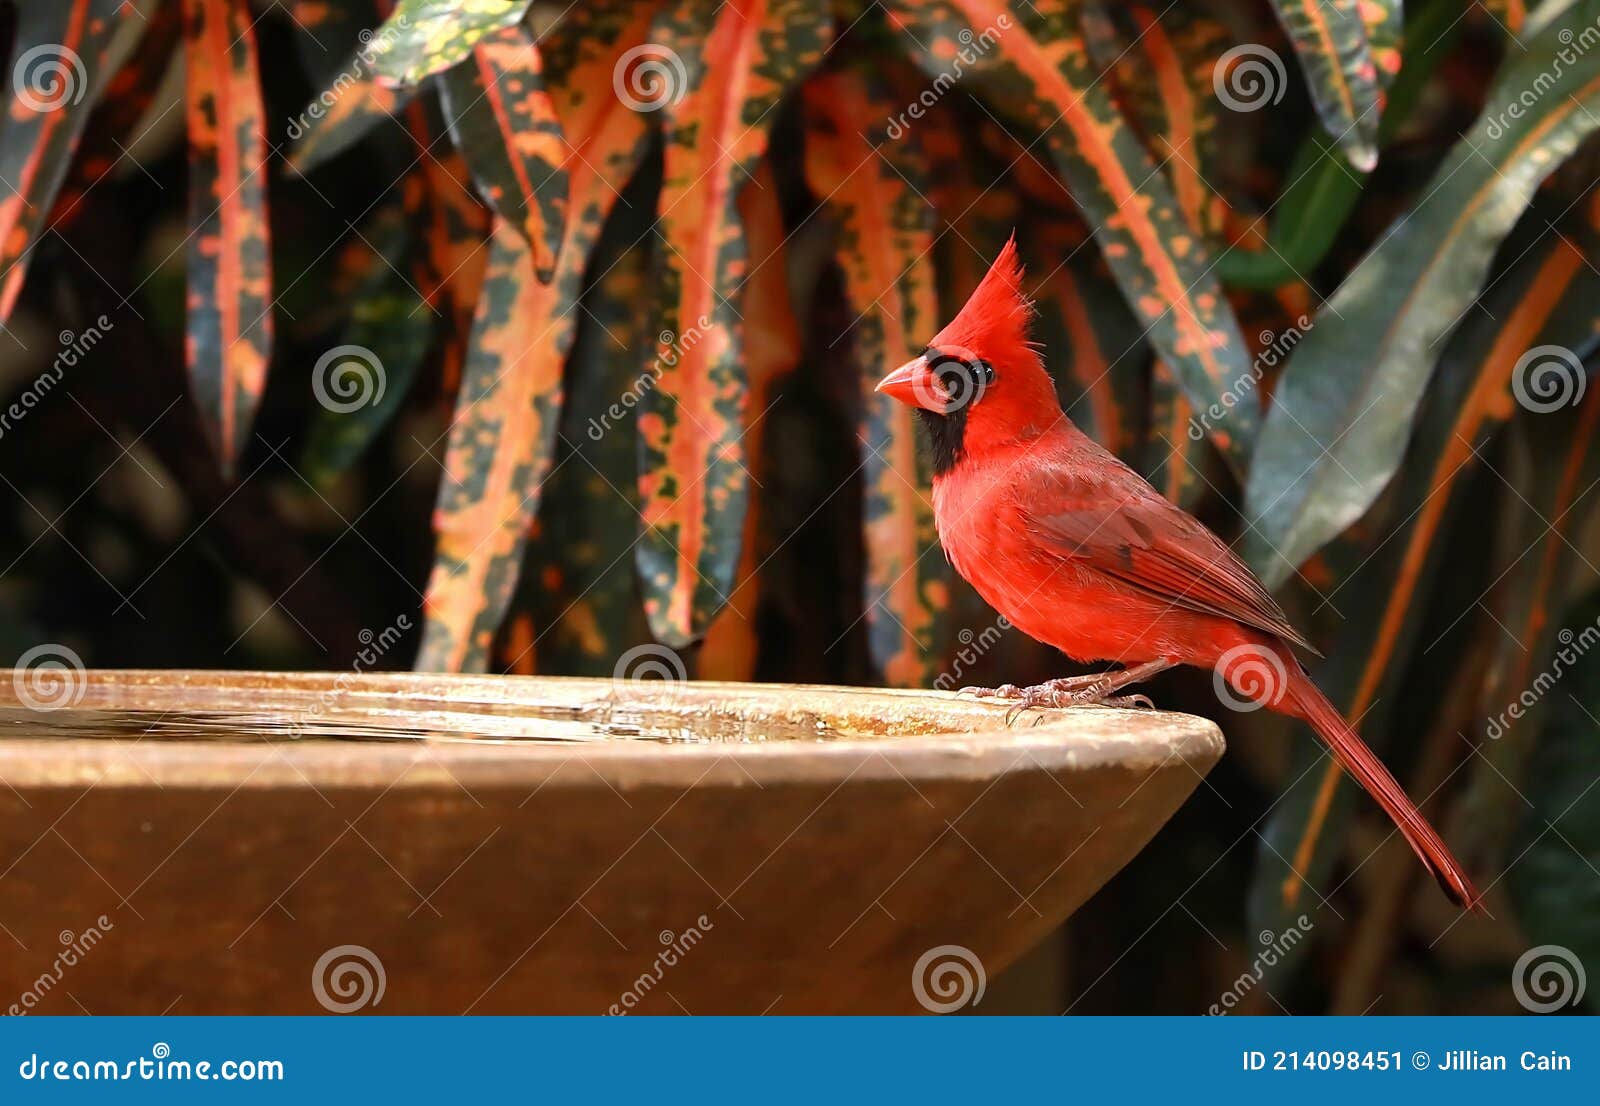 cardinal bird visits a bird bath